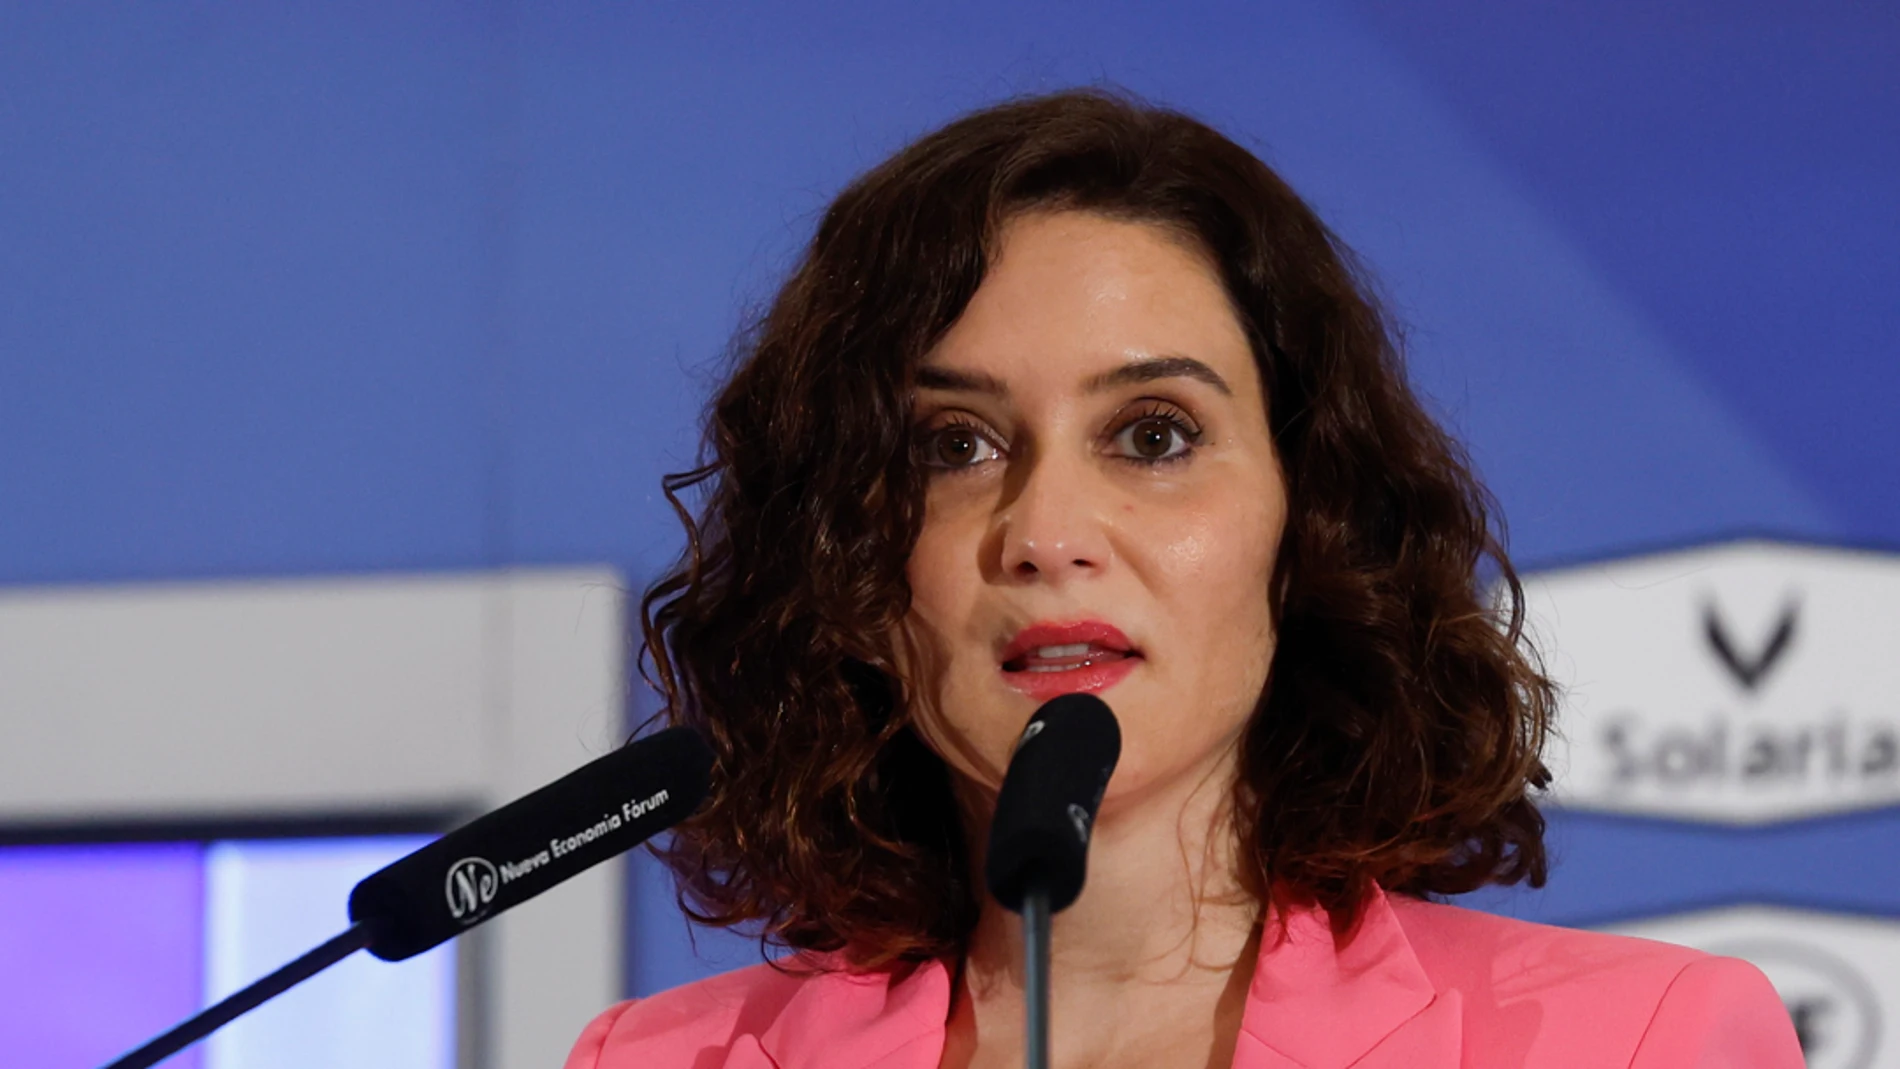  La presidenta de la Comunidad de Madrid y candidata a la reelección, Isabel Díaz Ayuso